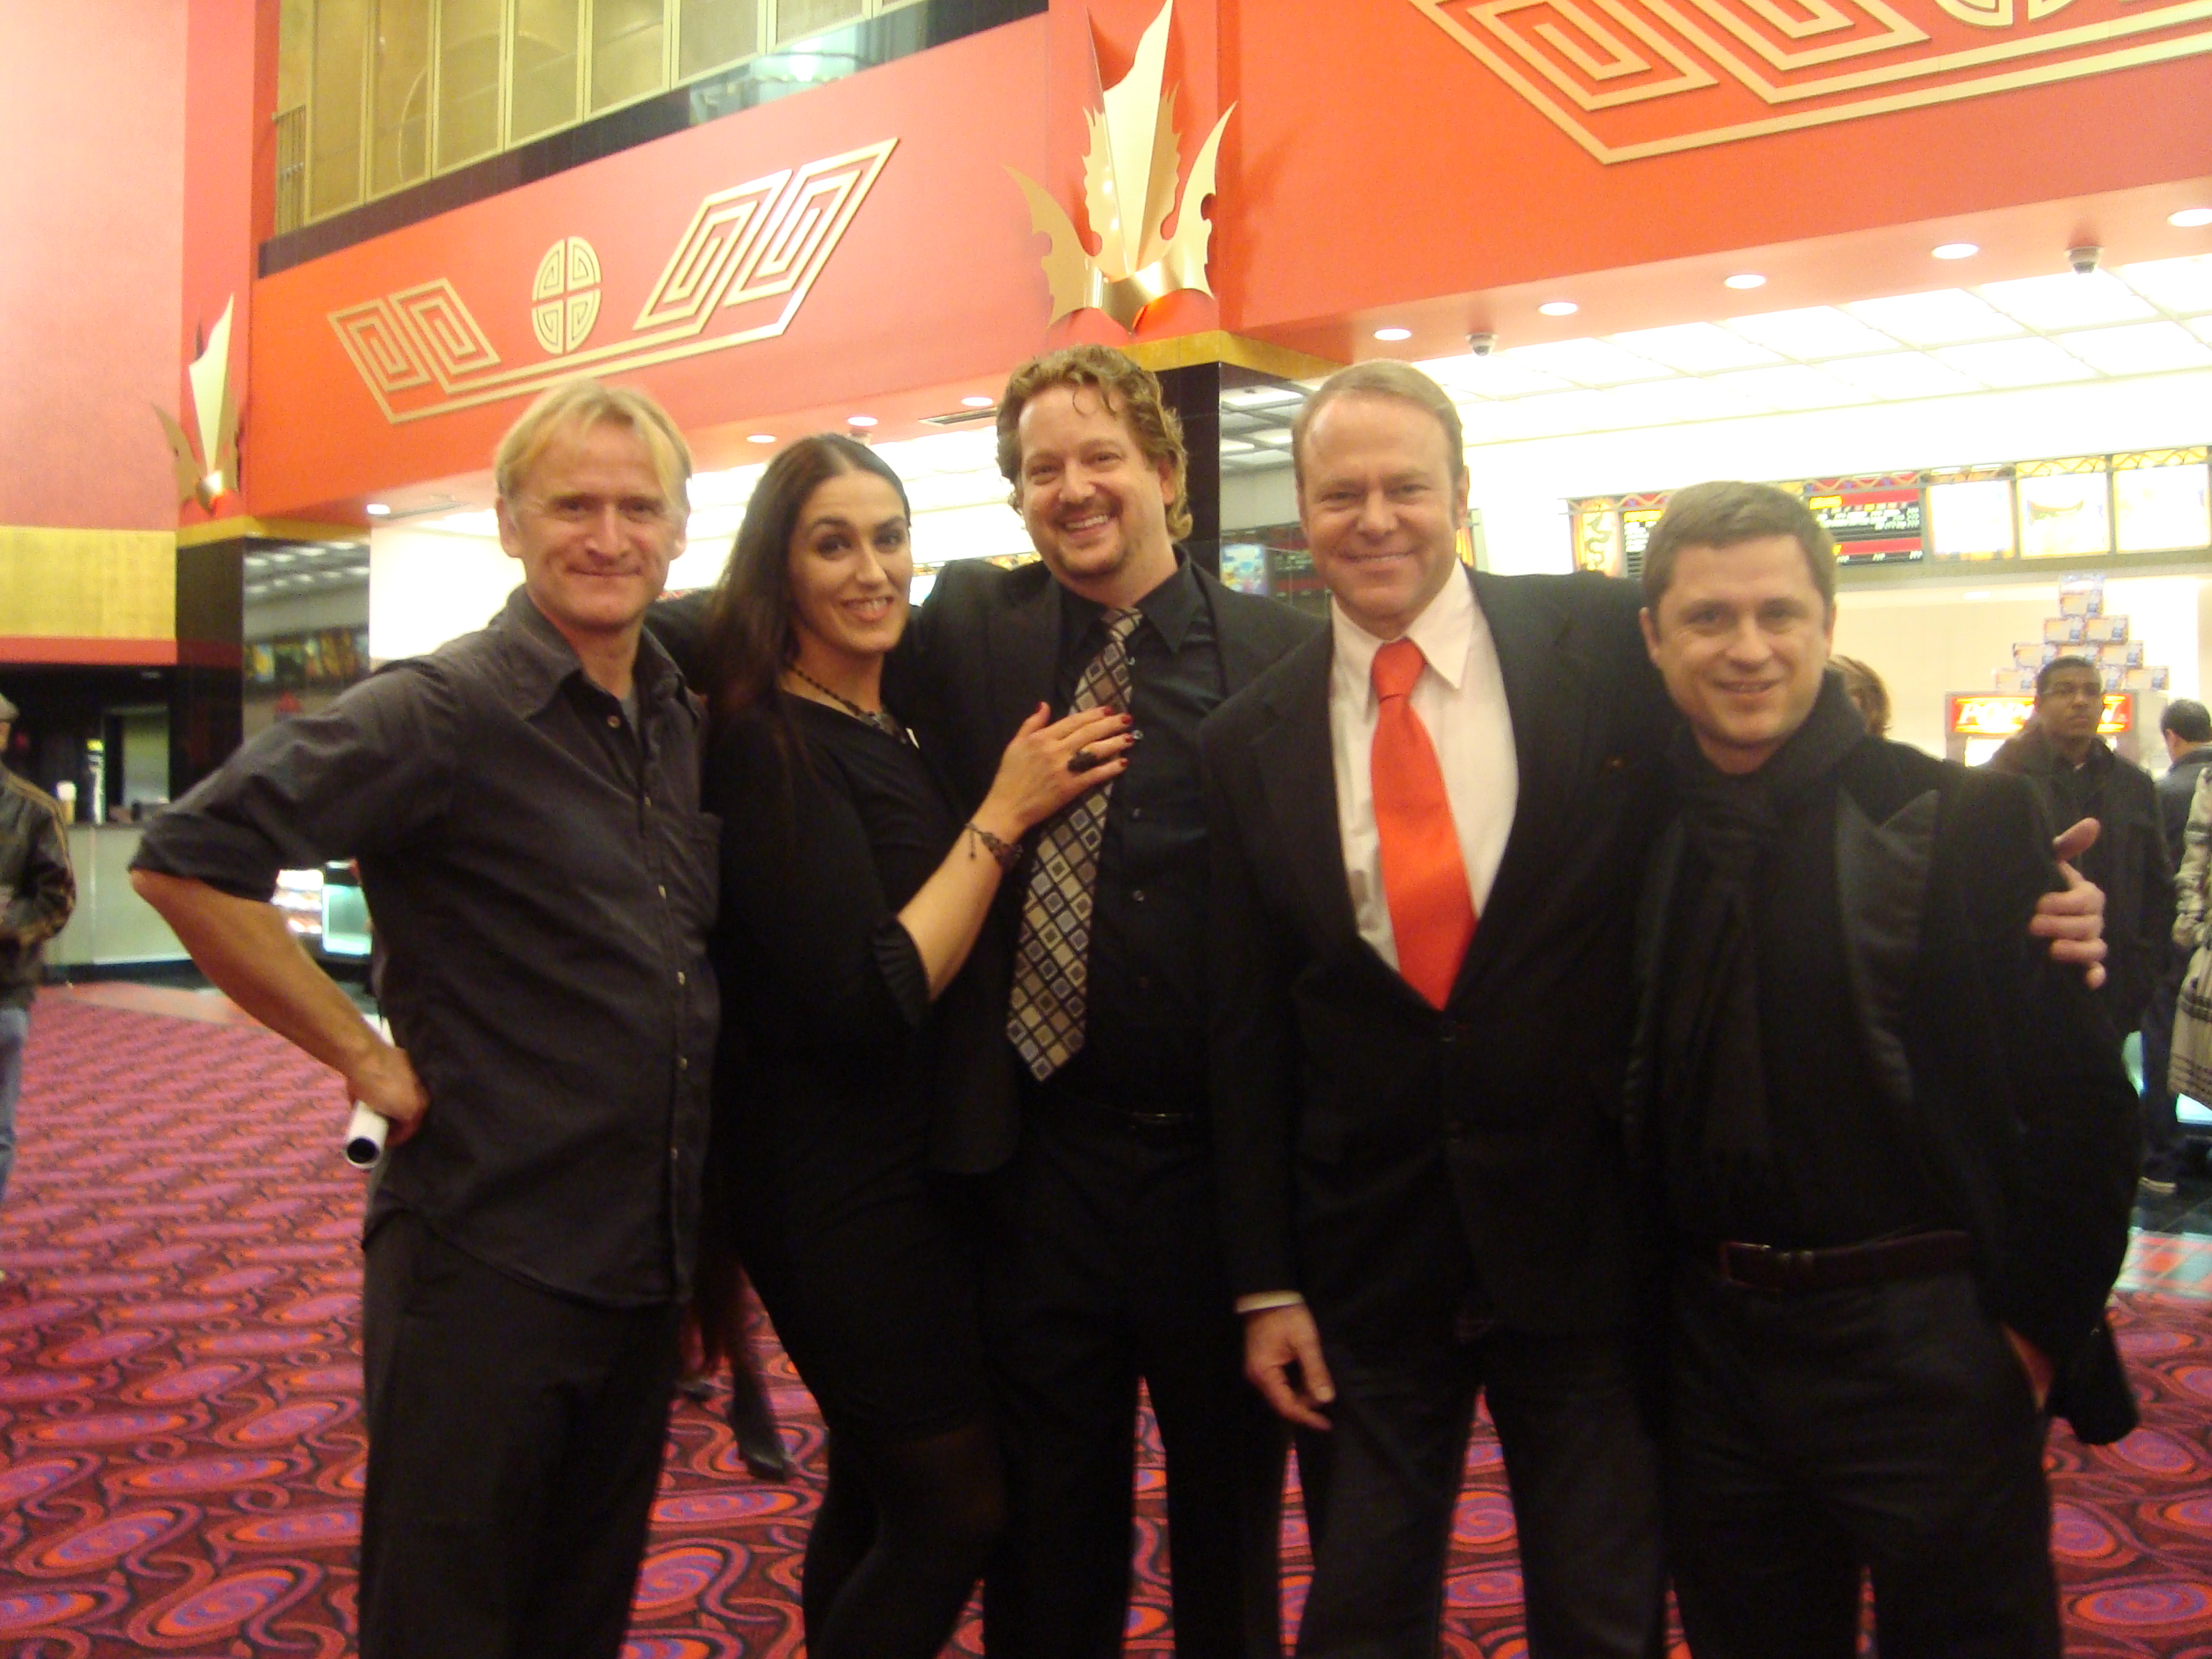 Dean Haglund, Jeanne Orsini, Adam Rote, Greg Travis, Max Bartoli at the Grauman's Chinese Theatre for the premiere of 